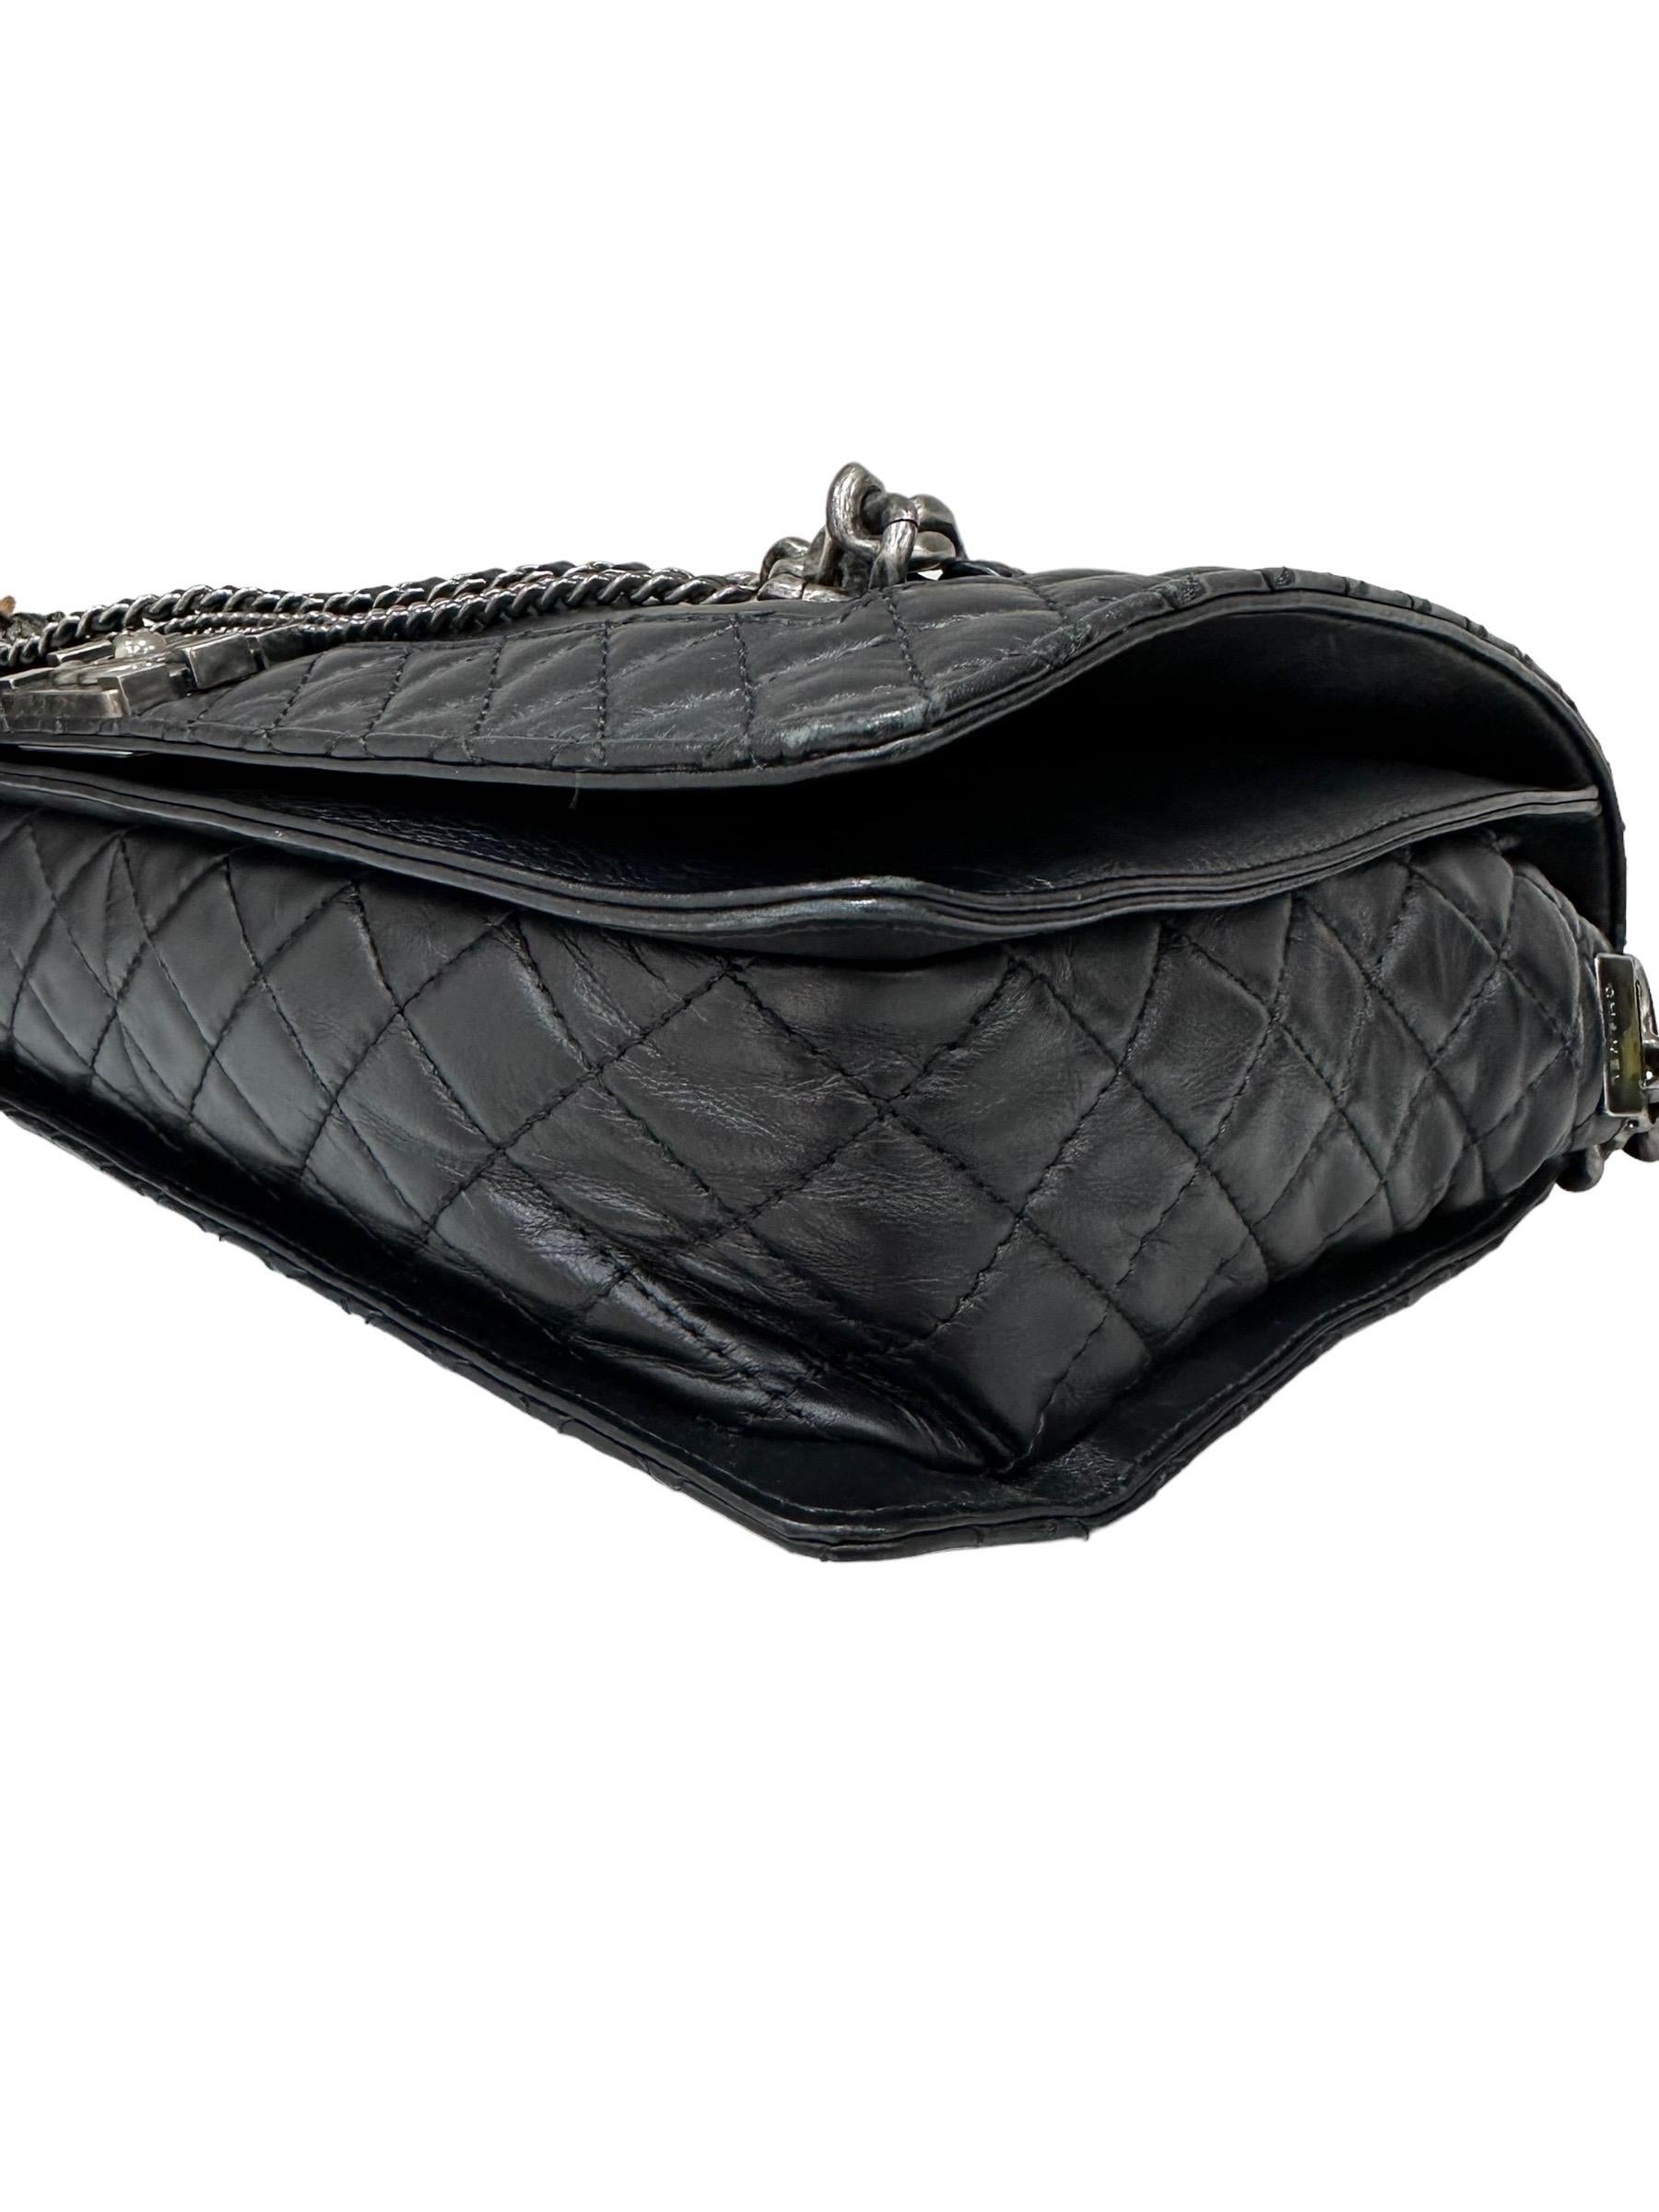 2014 Chanel Boy XL Limited Edition Shoulder Bag Multi Chains 4